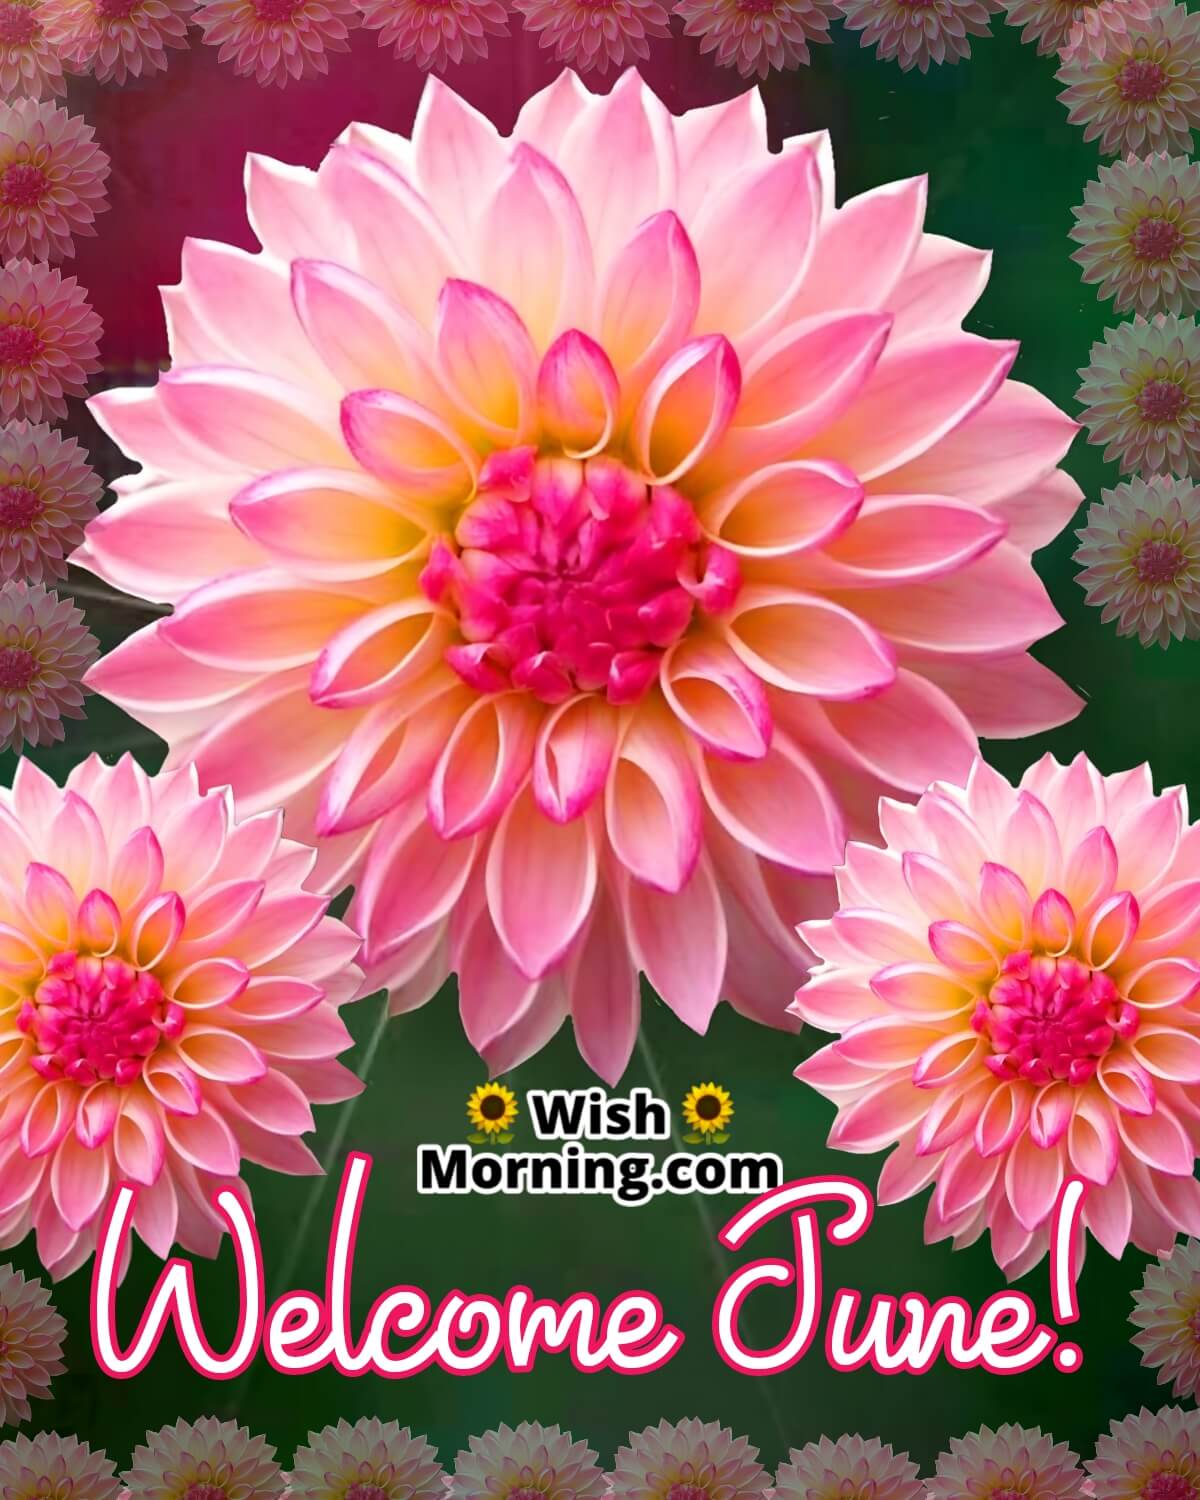 Welcome, June